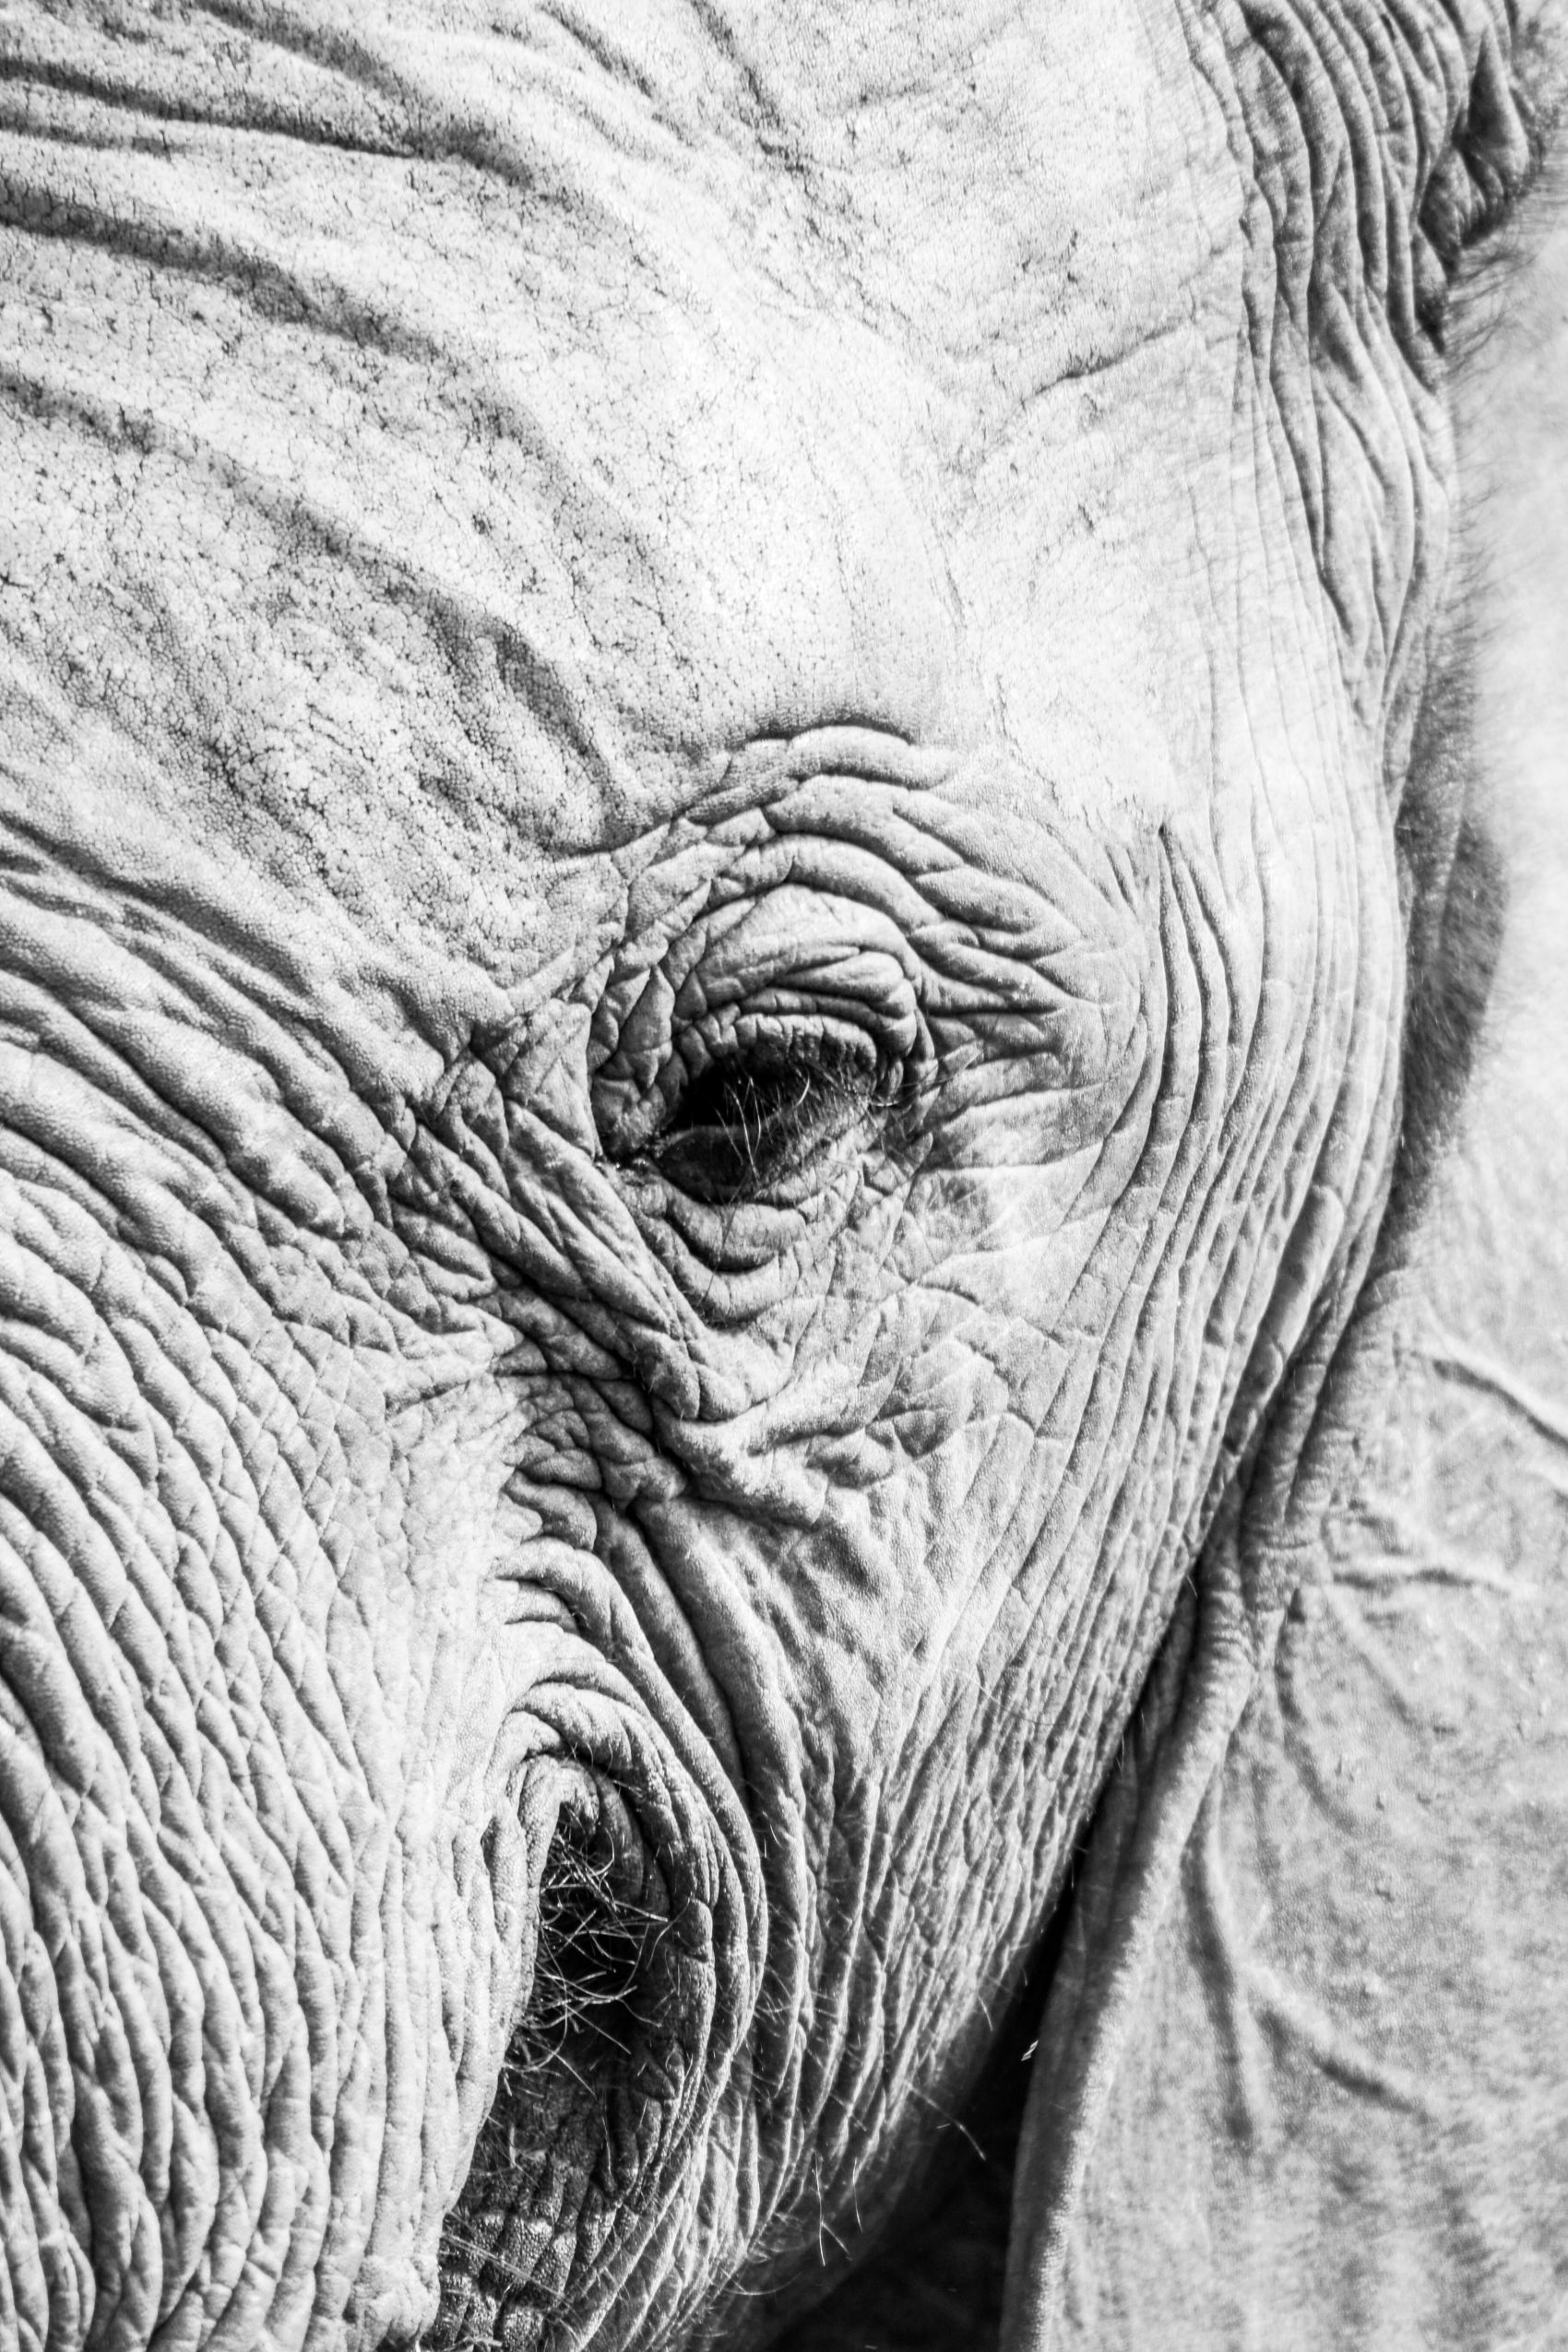 卡通大象简笔画插图(大象、简笔画、动物、卡通)手绘插图_北极熊素材库